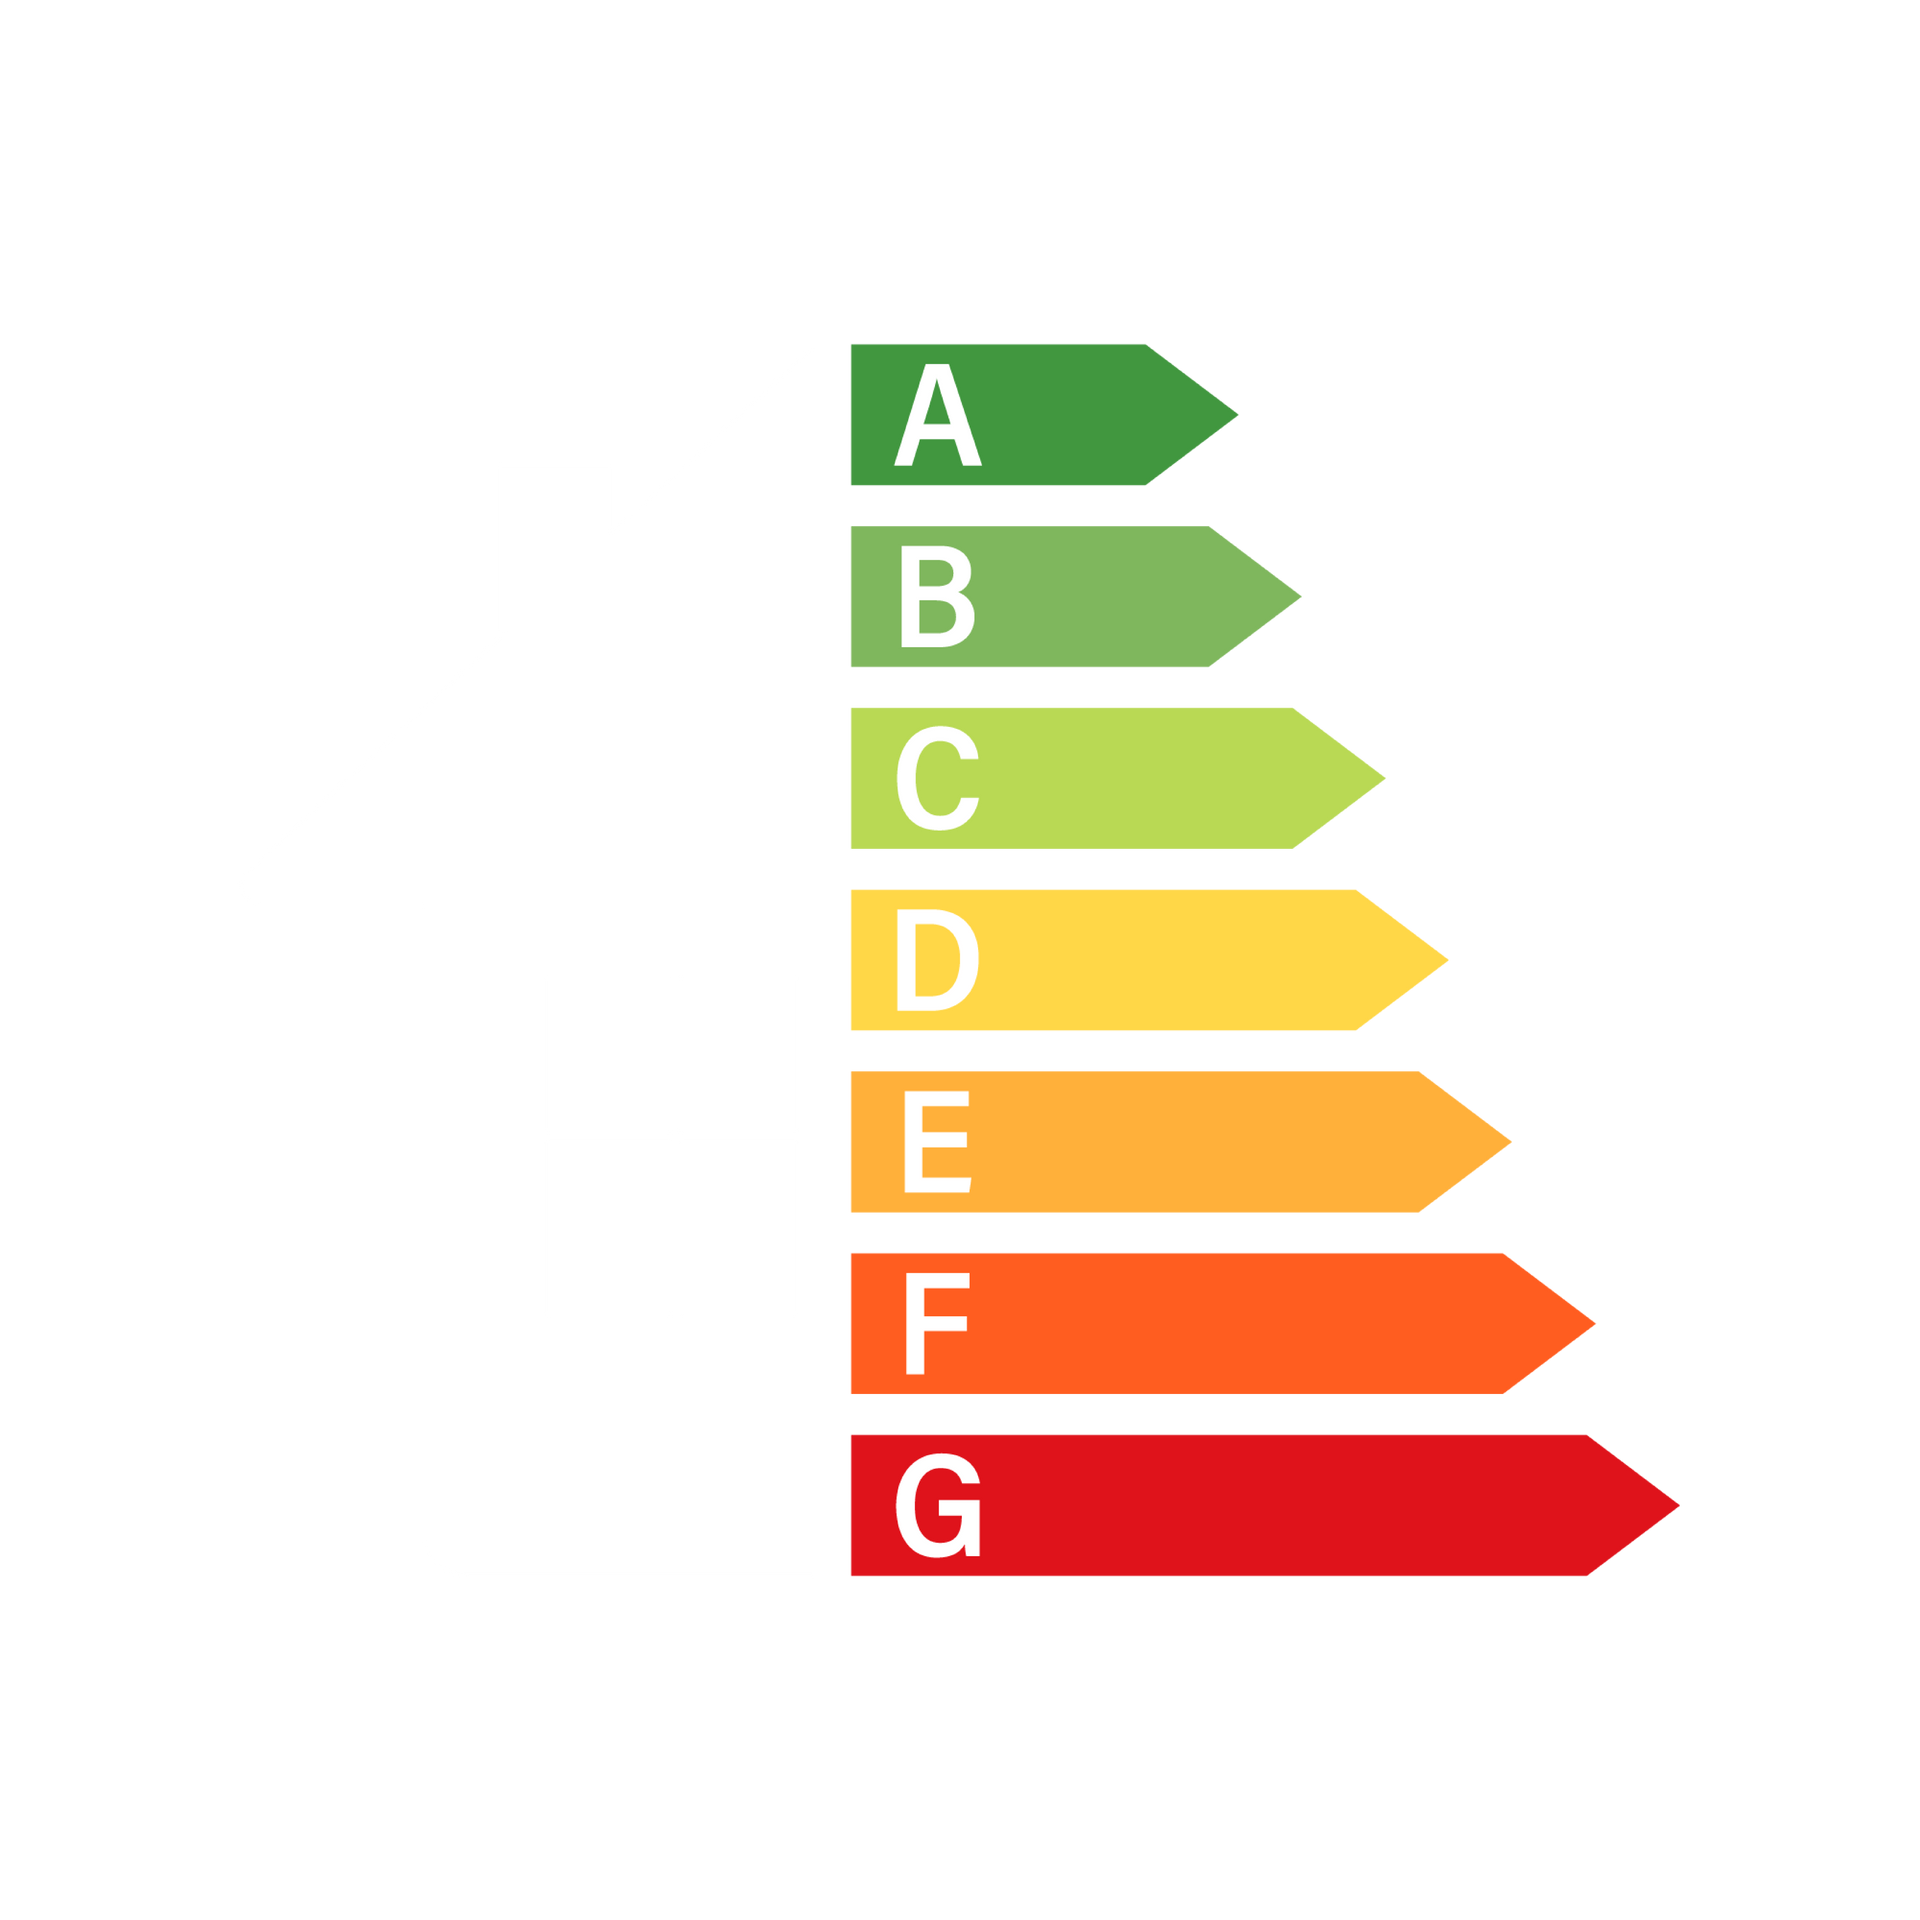 Symbole économies d'énergie avec maison et les 7 flèches de couleurs notées de A à G